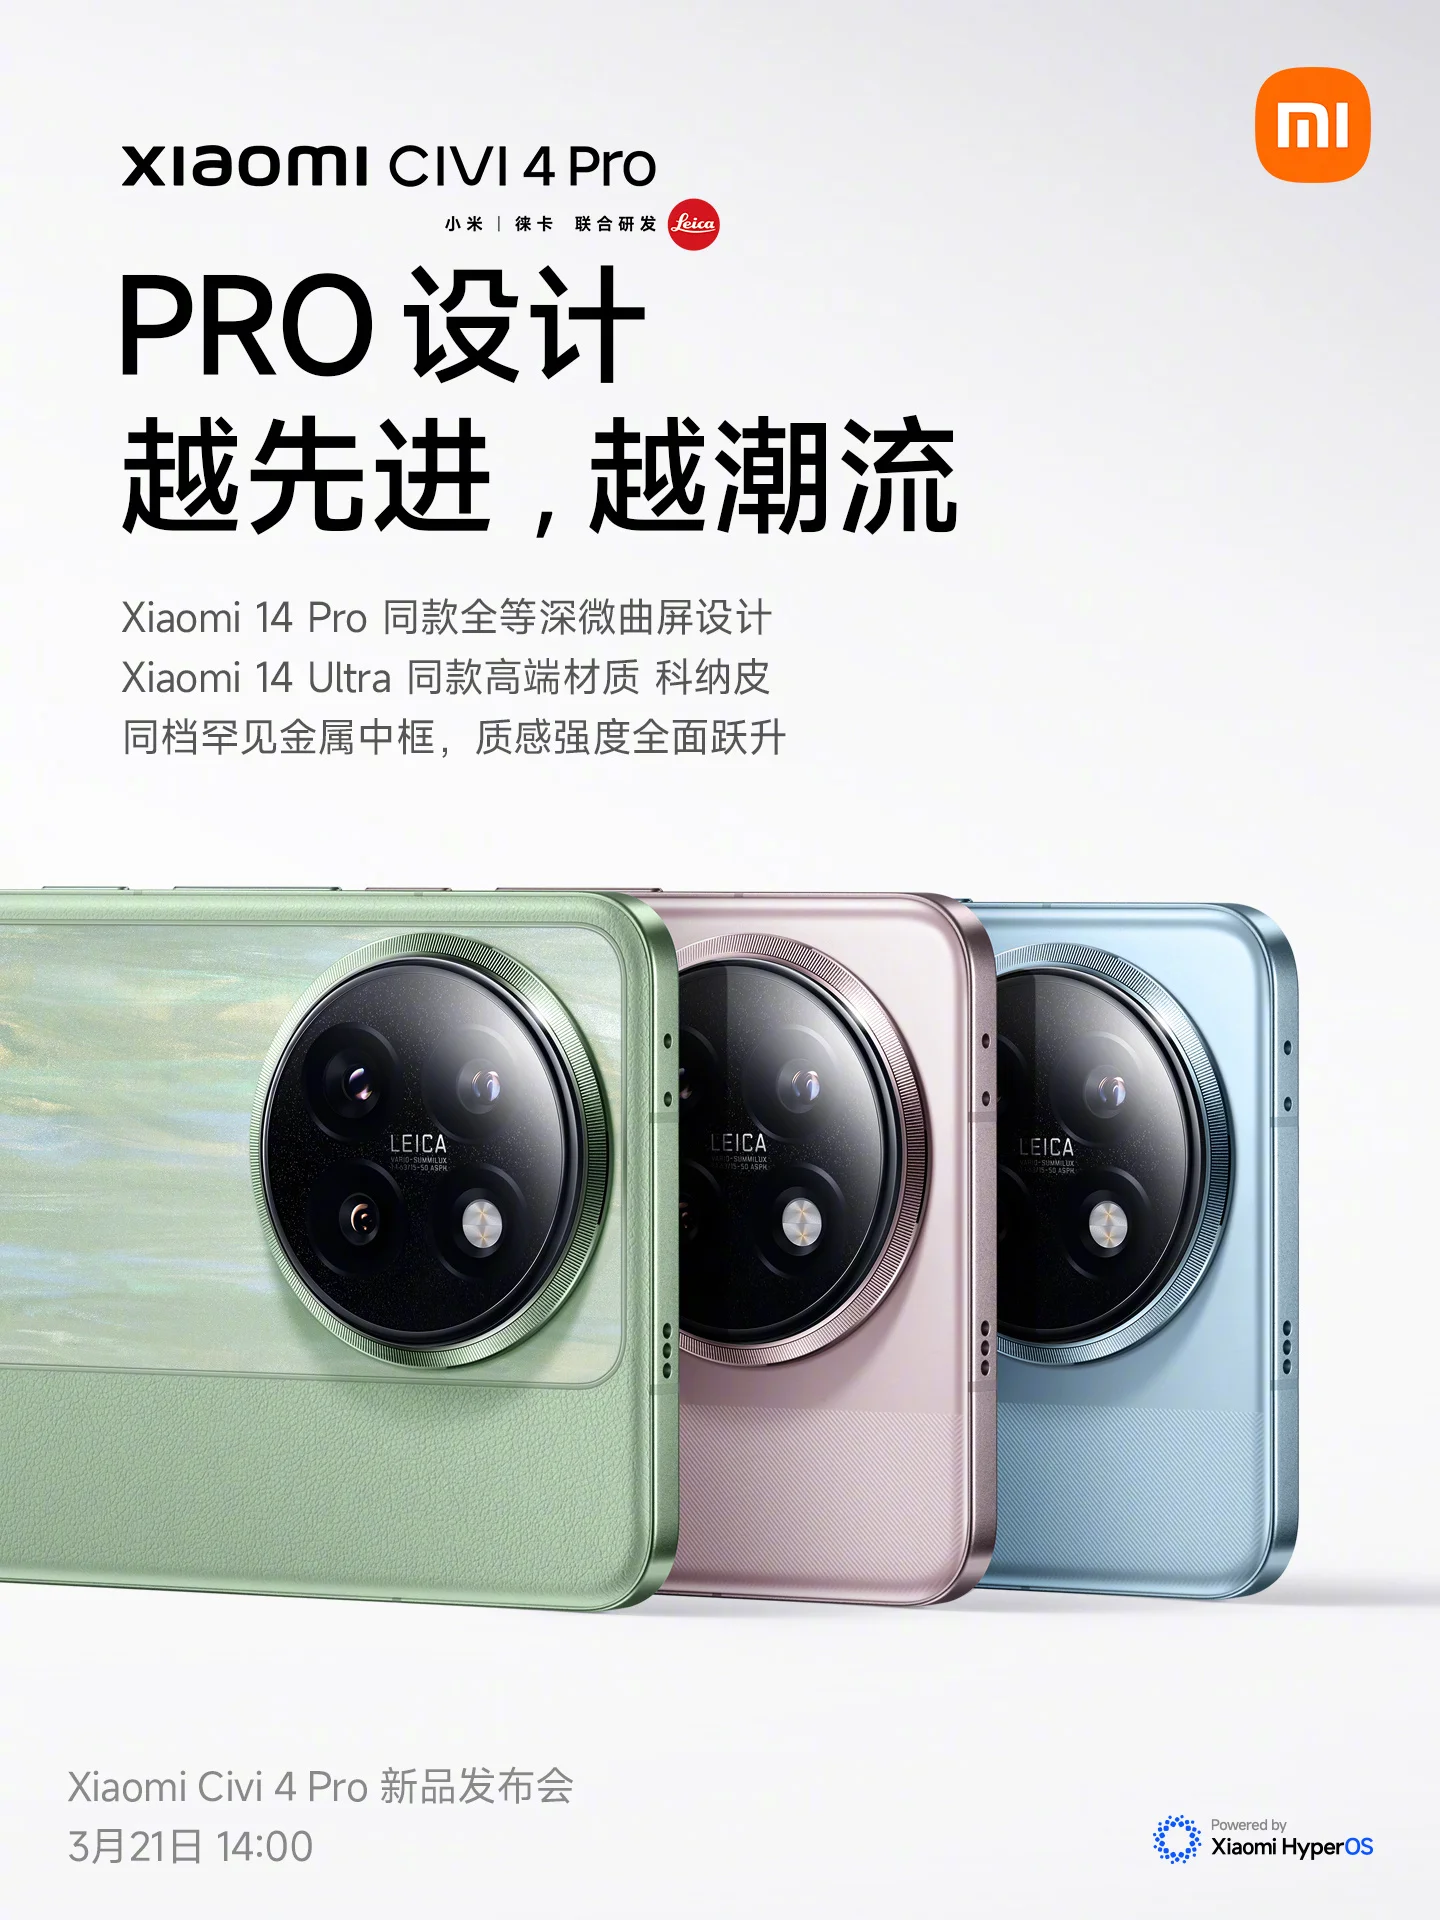 Xiaomi Civi 4 Pro announced